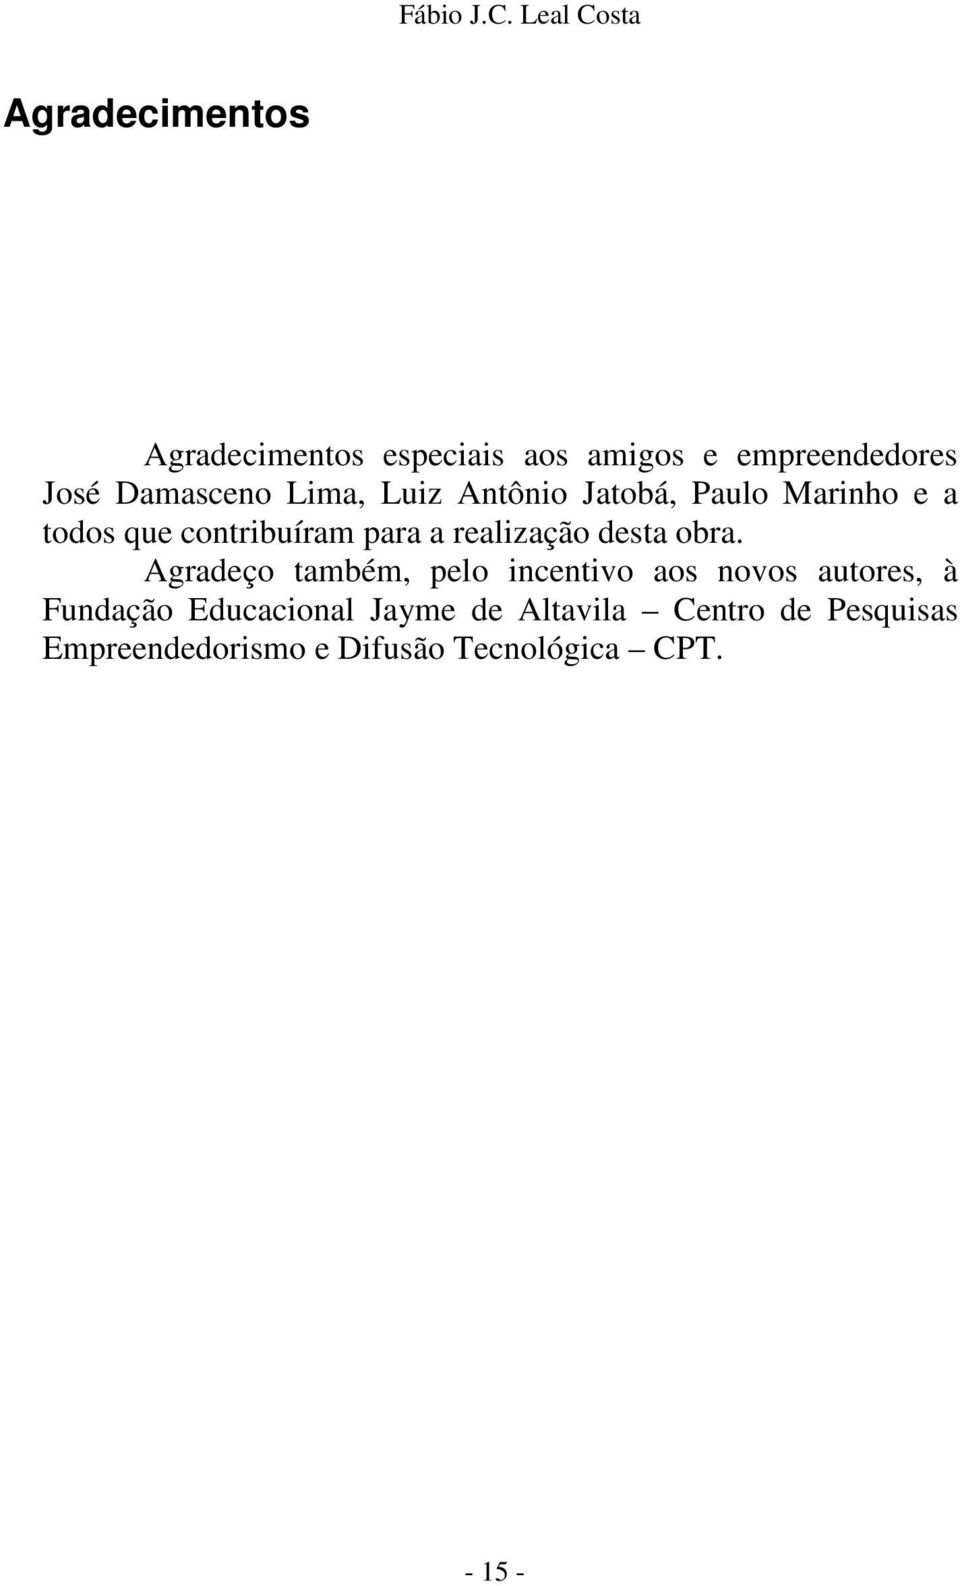 Damasceno Lima, Luiz Antônio Jatobá, Paulo Marinho e a todos que contribuíram para a